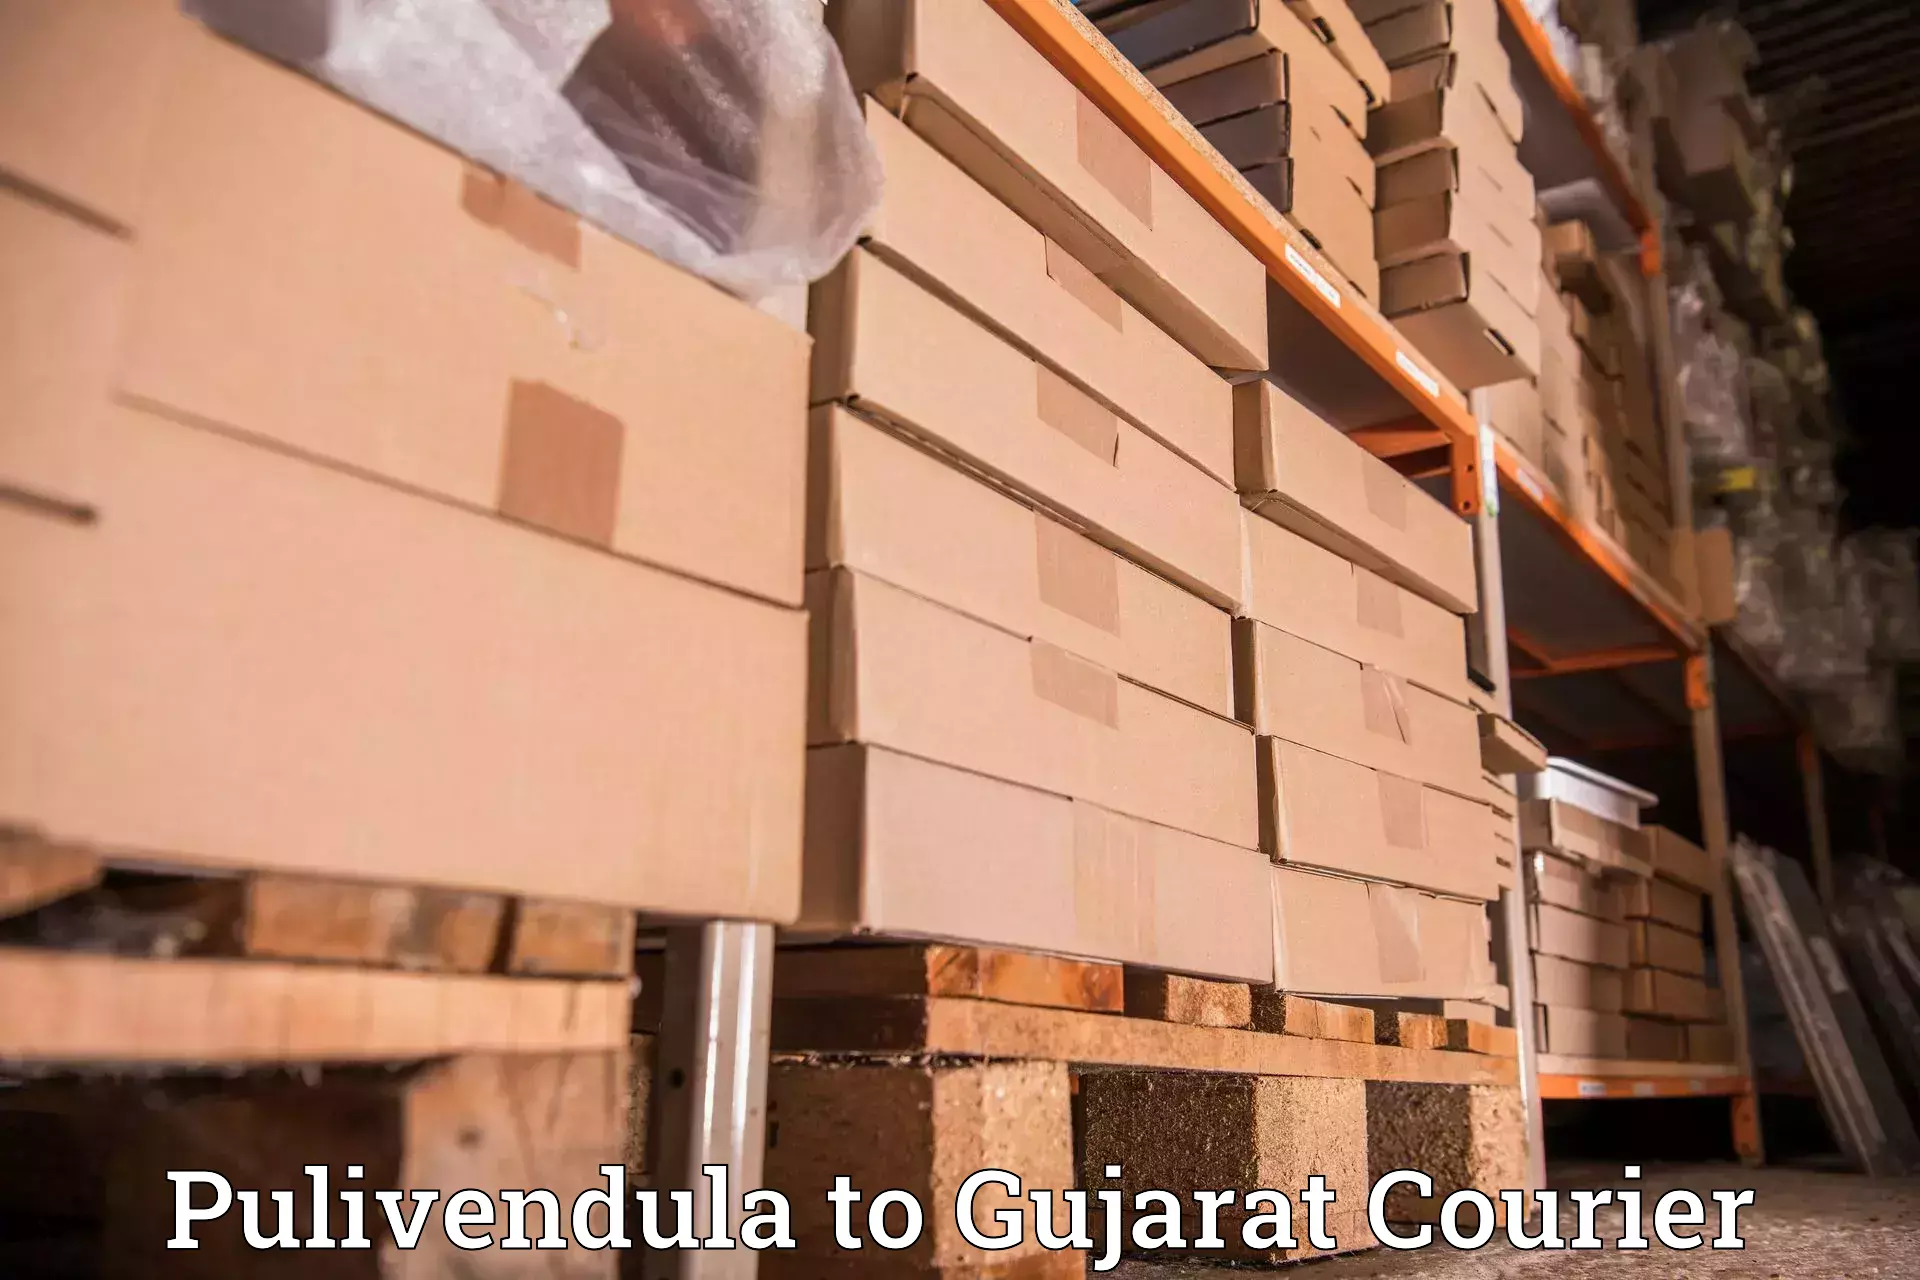 Nationwide parcel services Pulivendula to Kadana